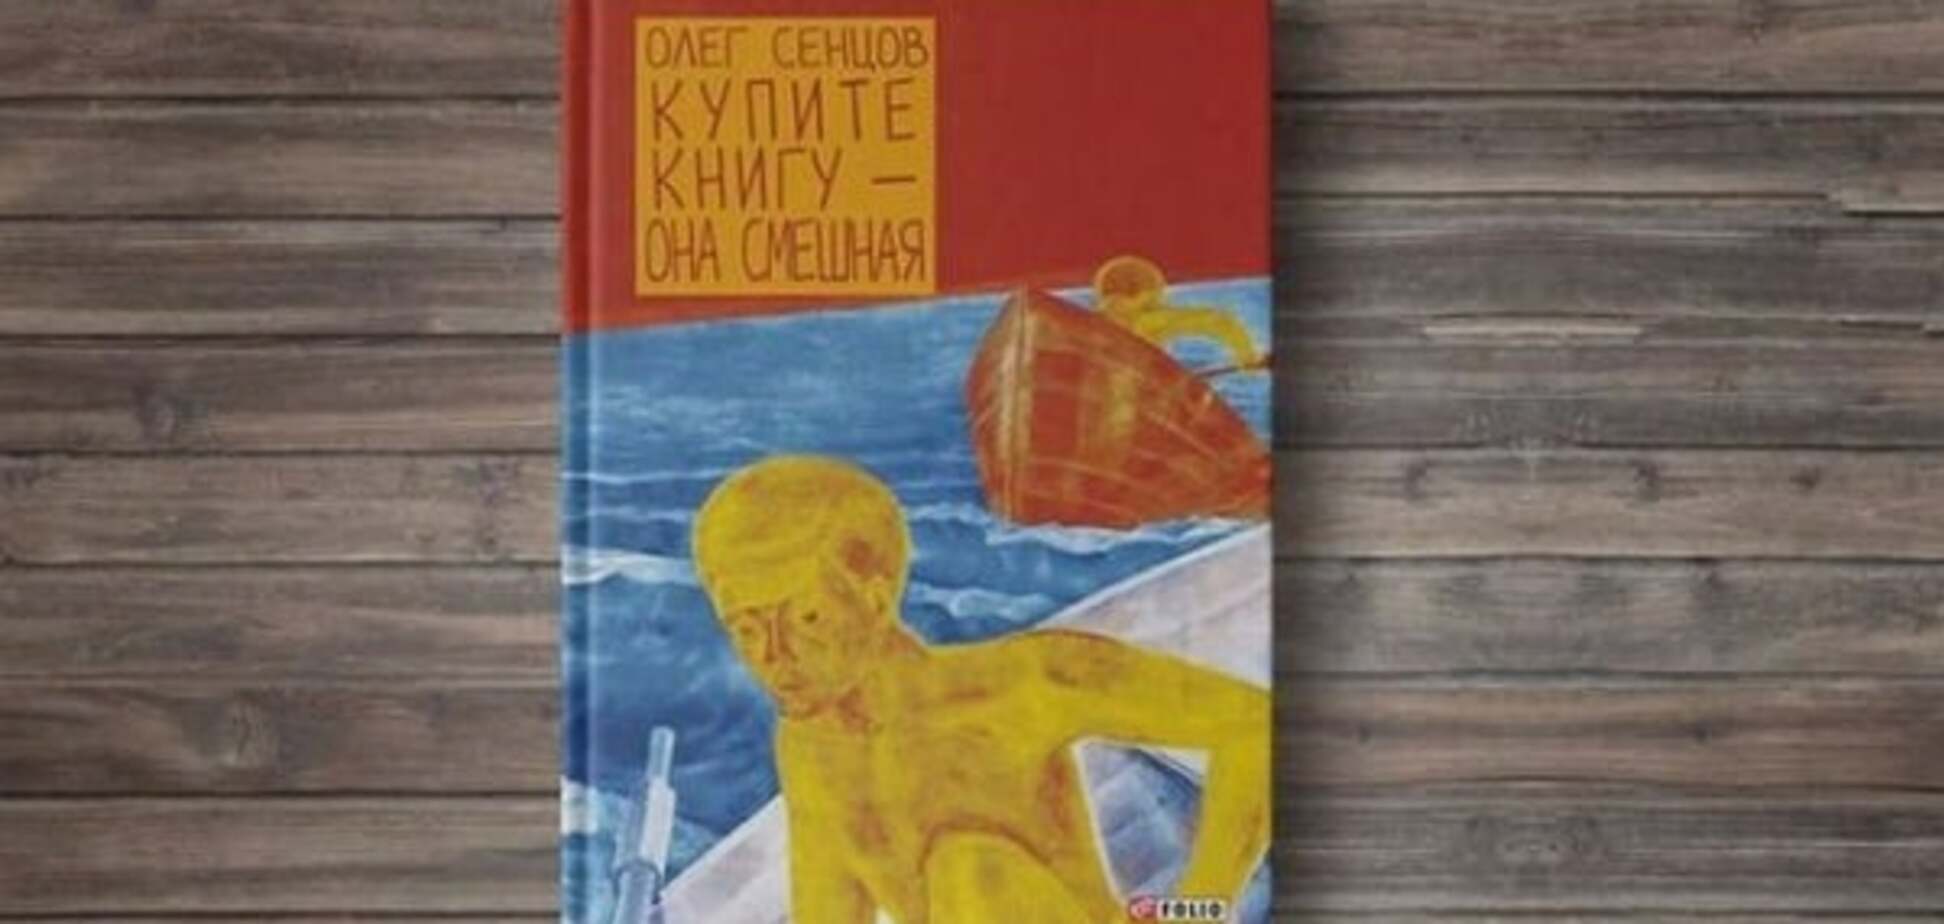 'Купіть книгу - вона смішна': в Одесі презентували роман Сенцова